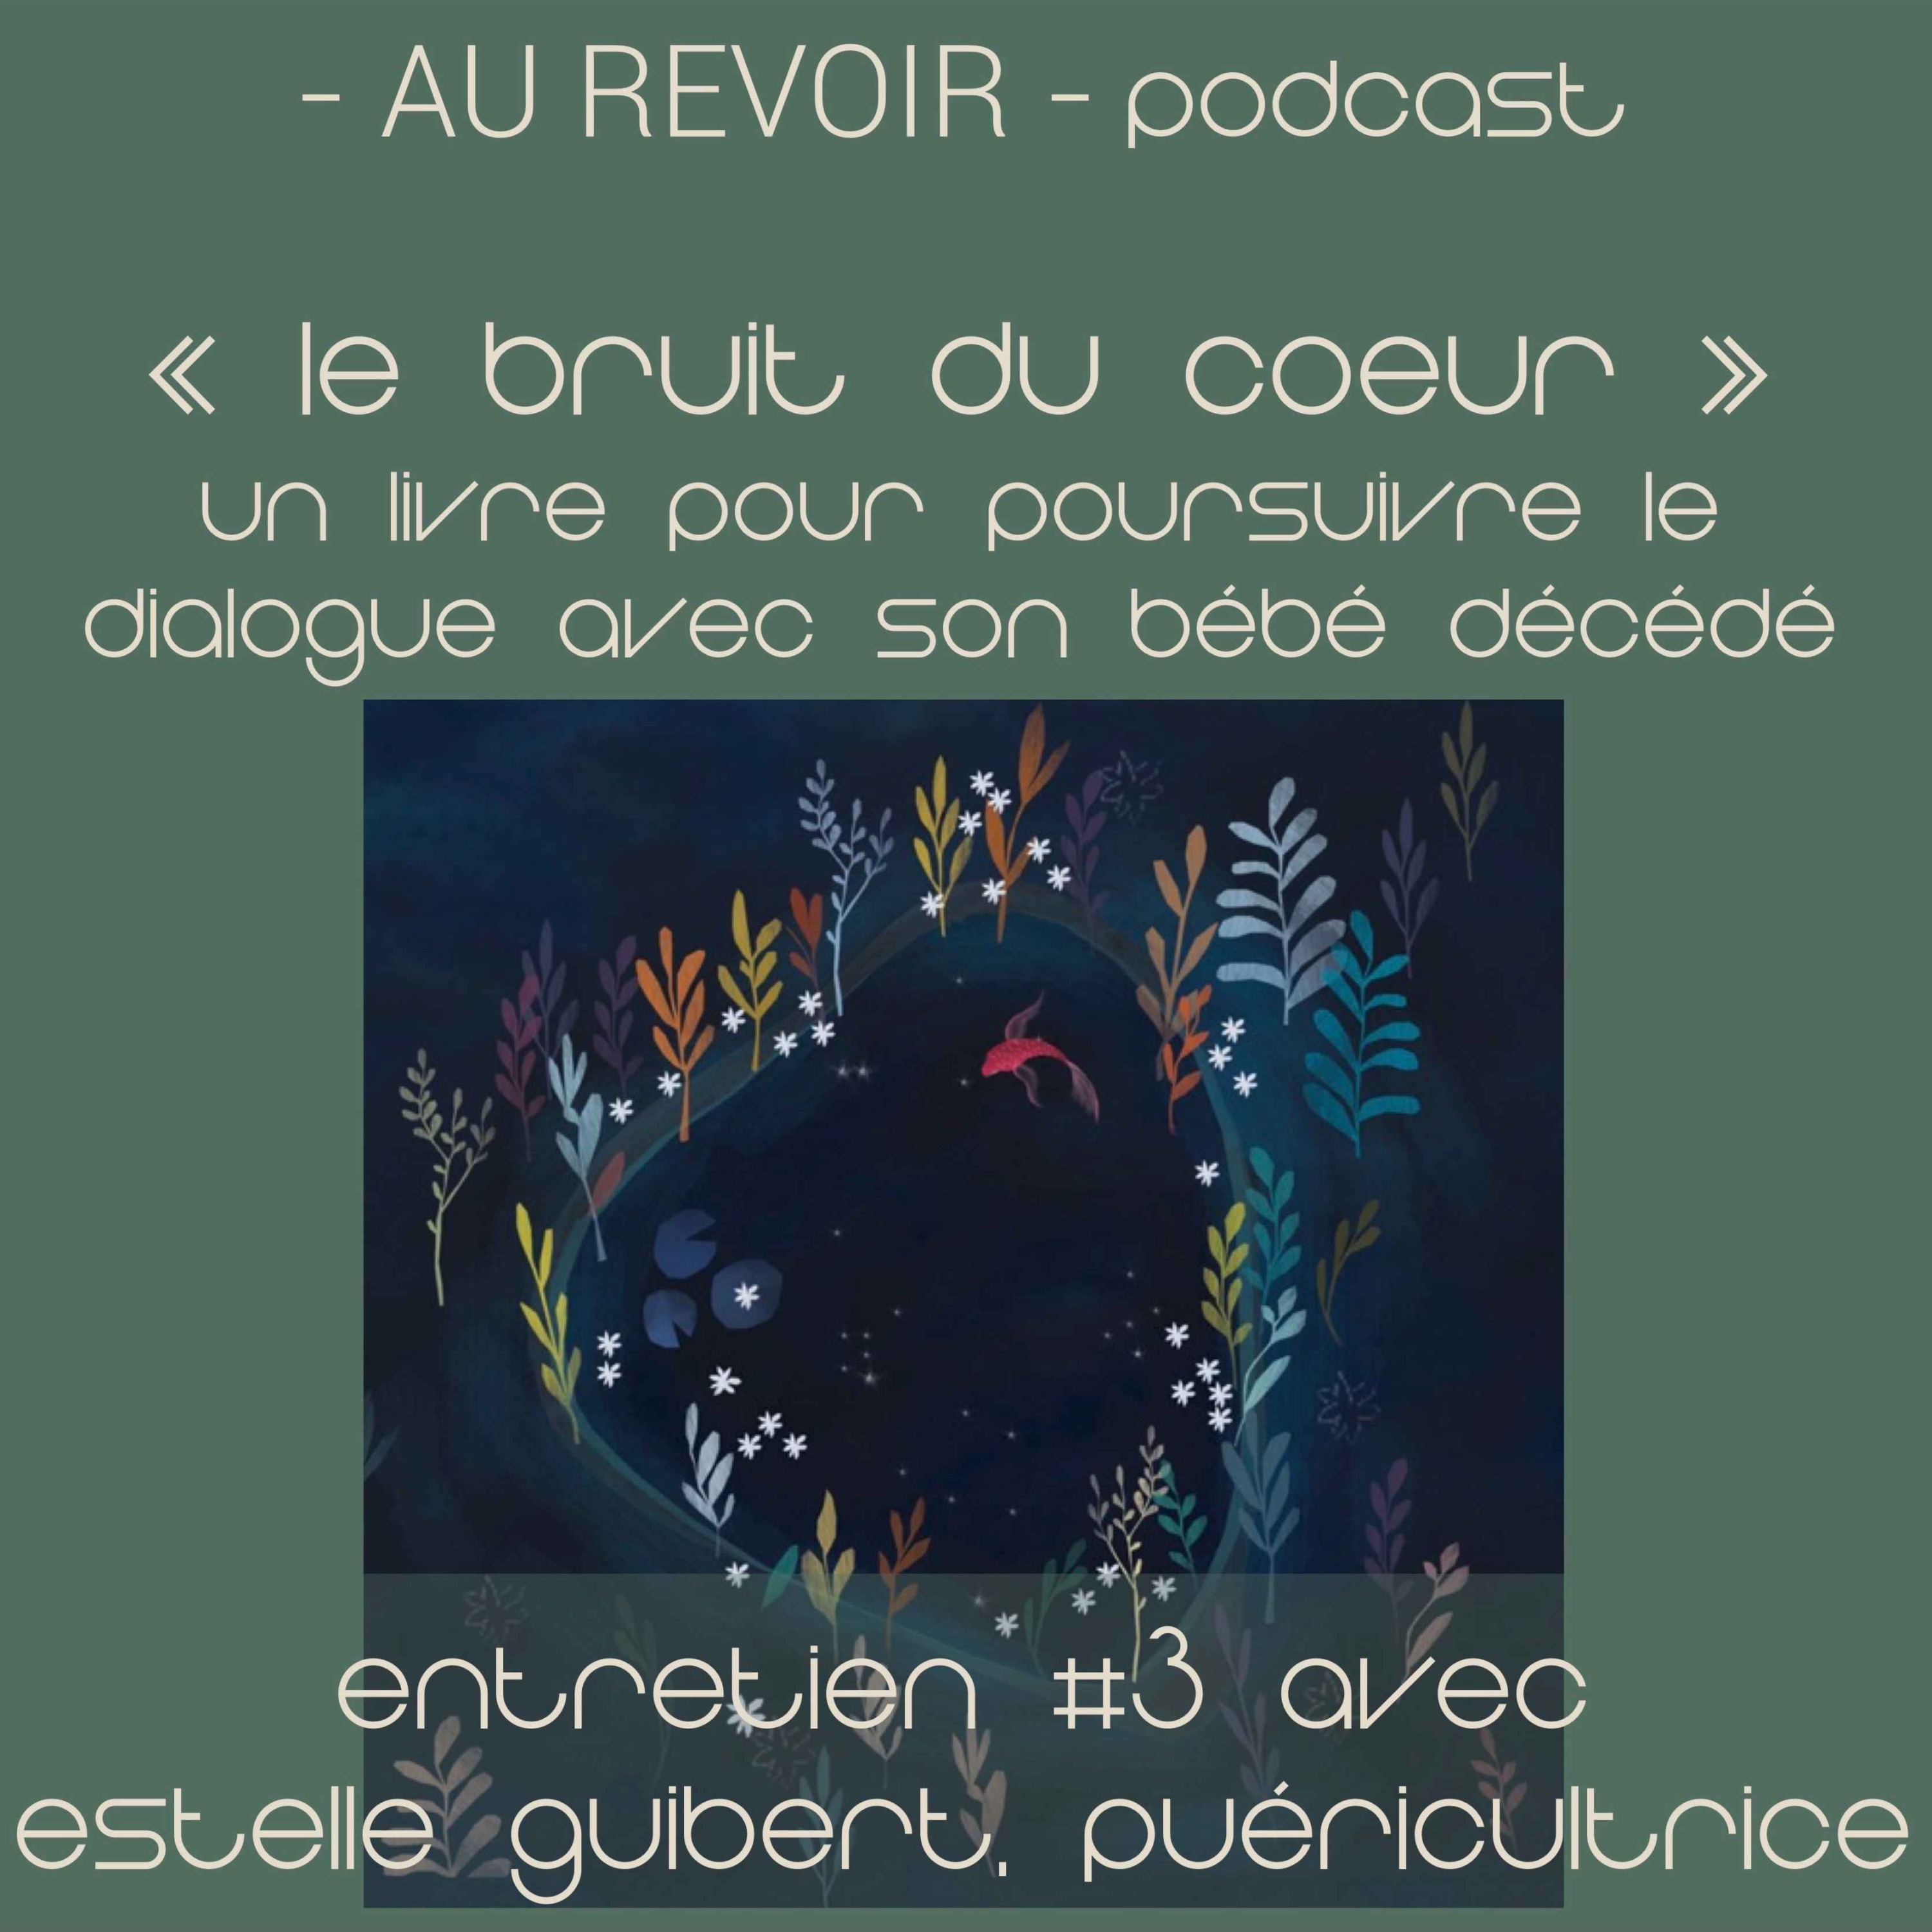 Les entretiens d’Au Revoir Podcast : ”Le Bruit du Coeur”, un livre pour poursuivre le dialogue avec son bébé décédé